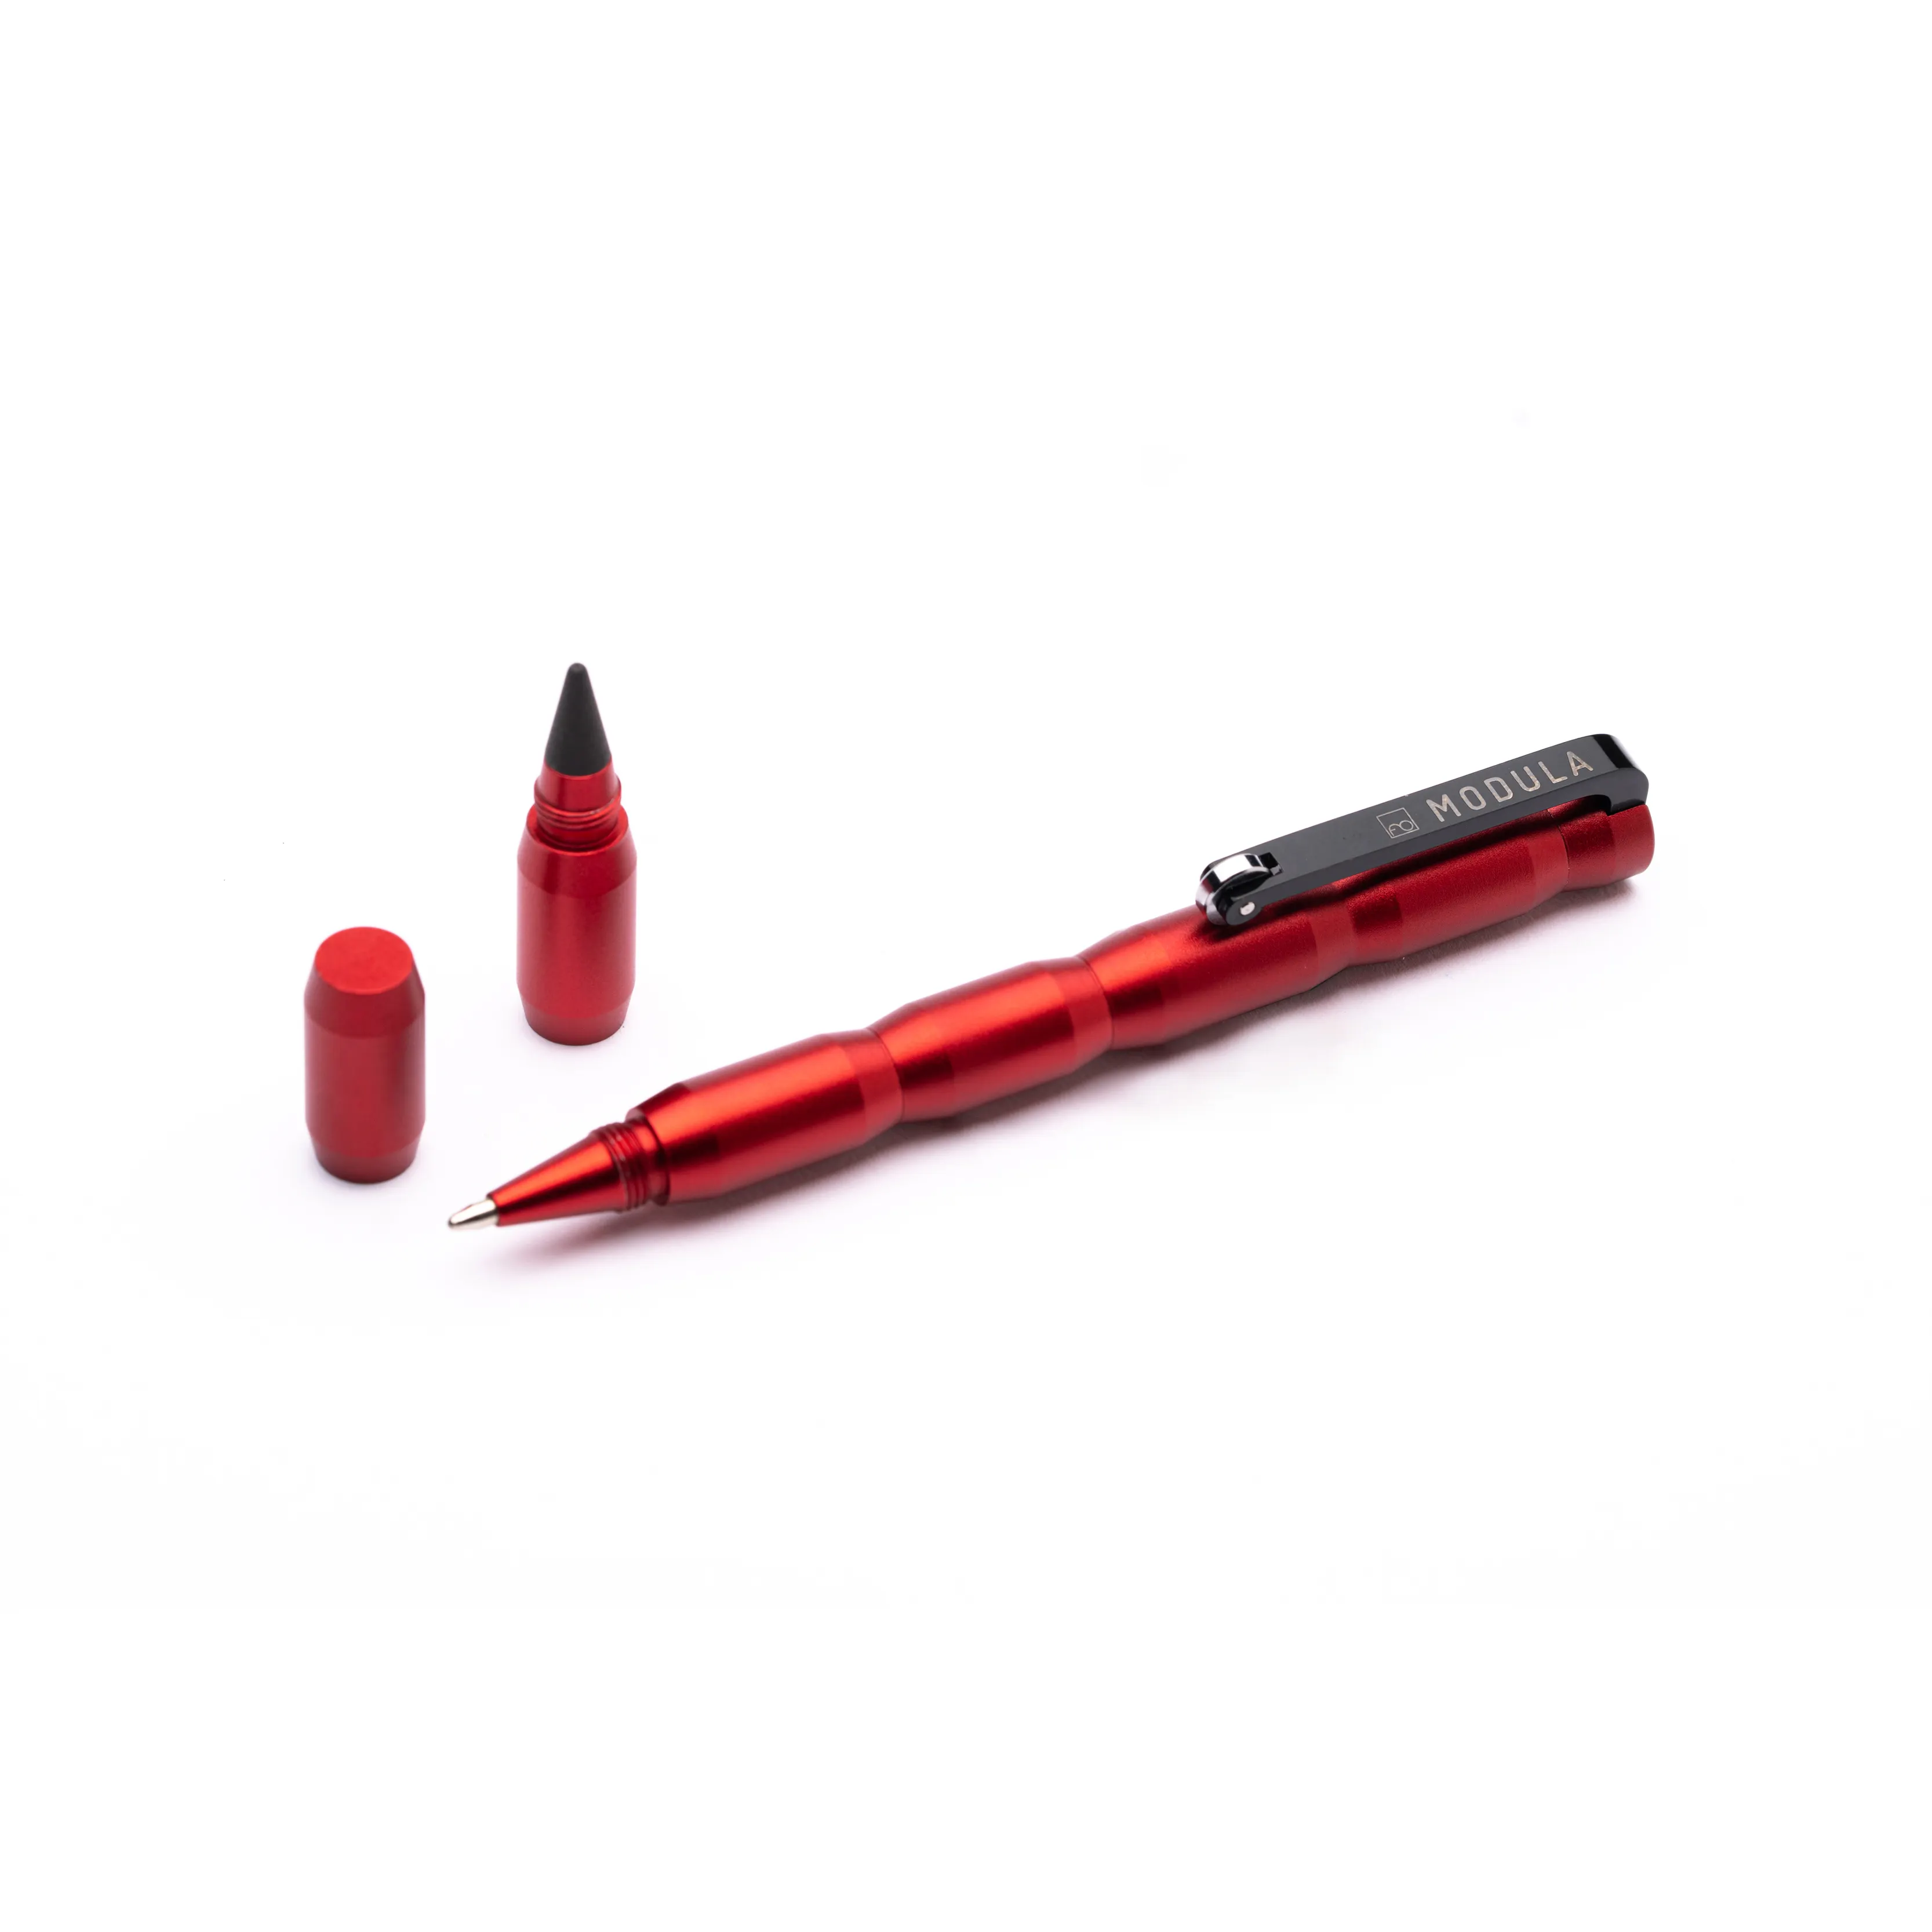 עט מודולרי חדשני עם מילוי כדורי כדורי פוינט ועיצוב קצה גרפיט להחלפה באיטליה עבור מודולה מתנה עסקית אדום